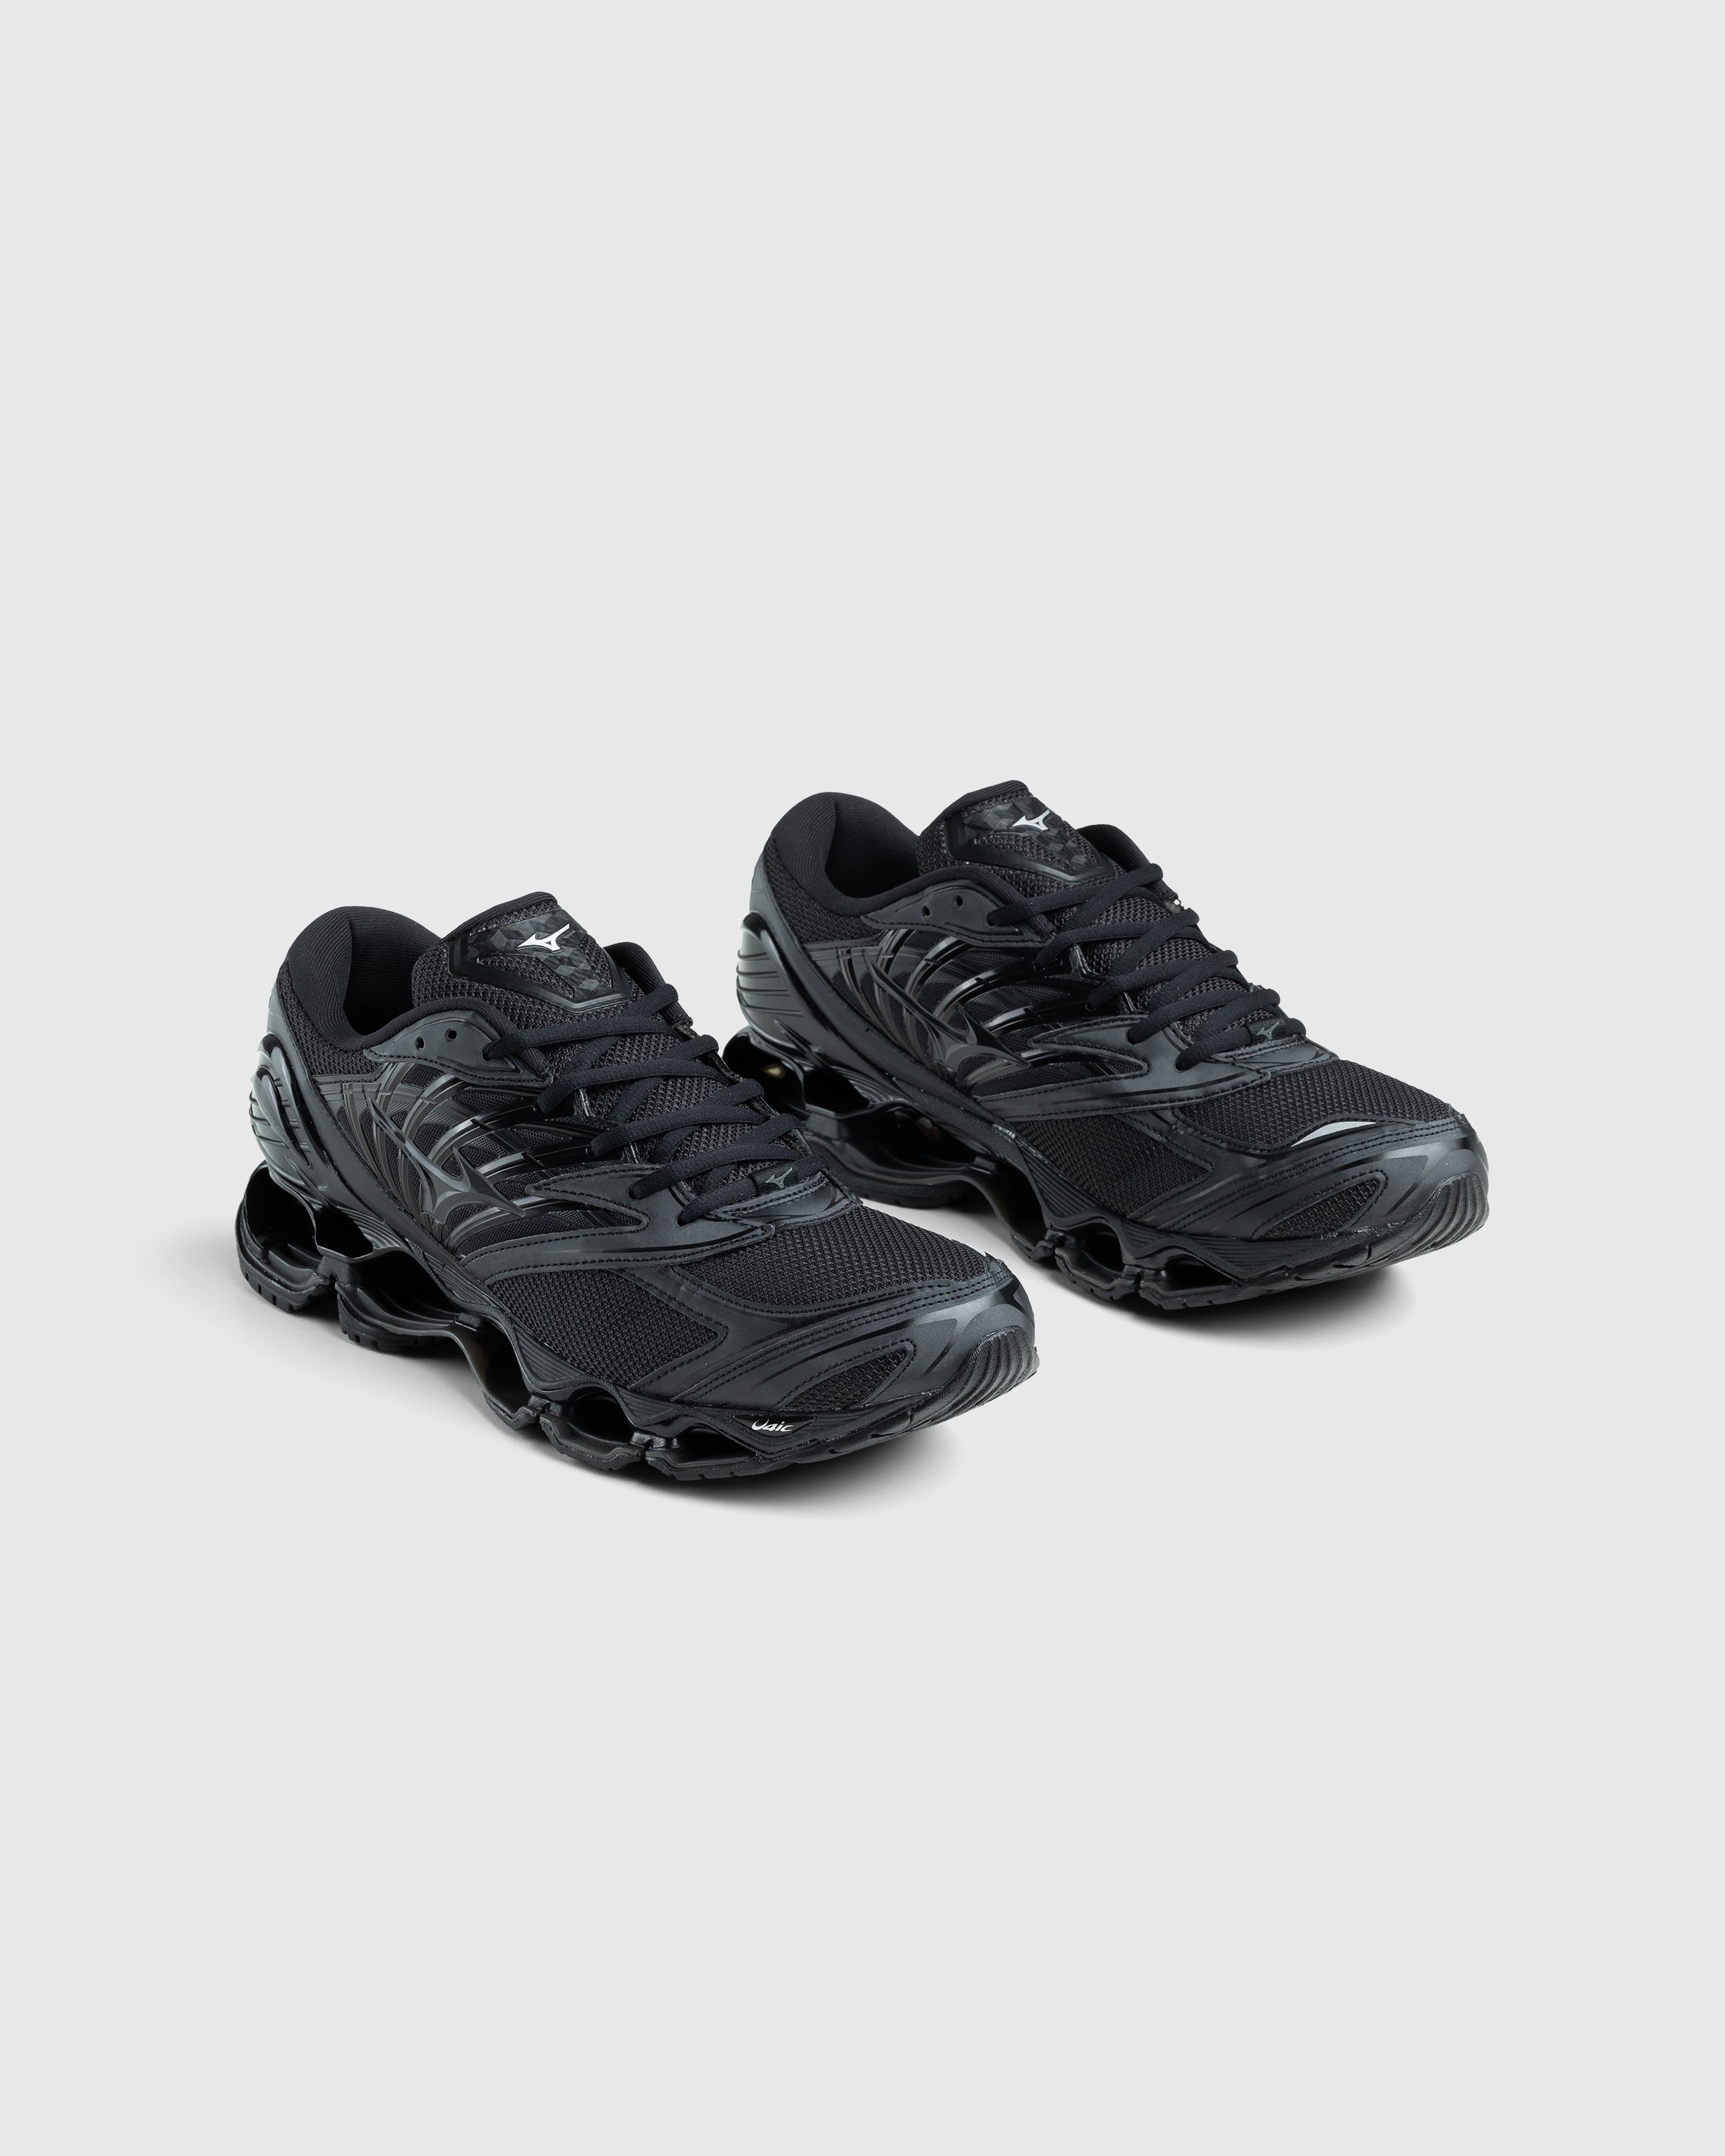 Mizuno - Wave Prophecy LS Black - Footwear - Black - Image 3